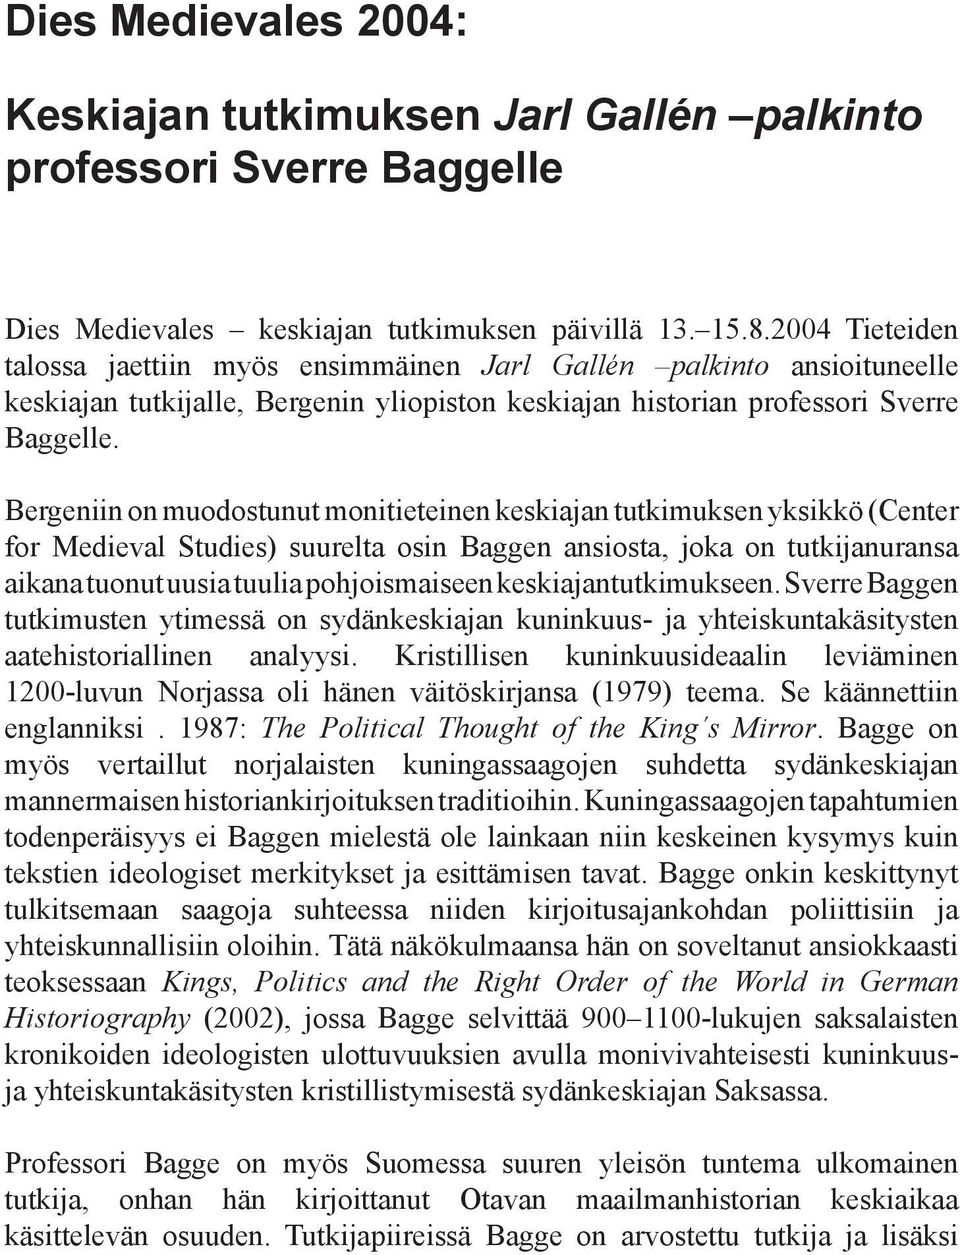 Bergeniin on muodostunut monitieteinen keskiajan tutkimuksen yksikkö (Center for Medieval Studies) suurelta osin Baggen ansiosta, joka on tutkijanuransa aikana tuonut uusia tuulia pohjoismaiseen